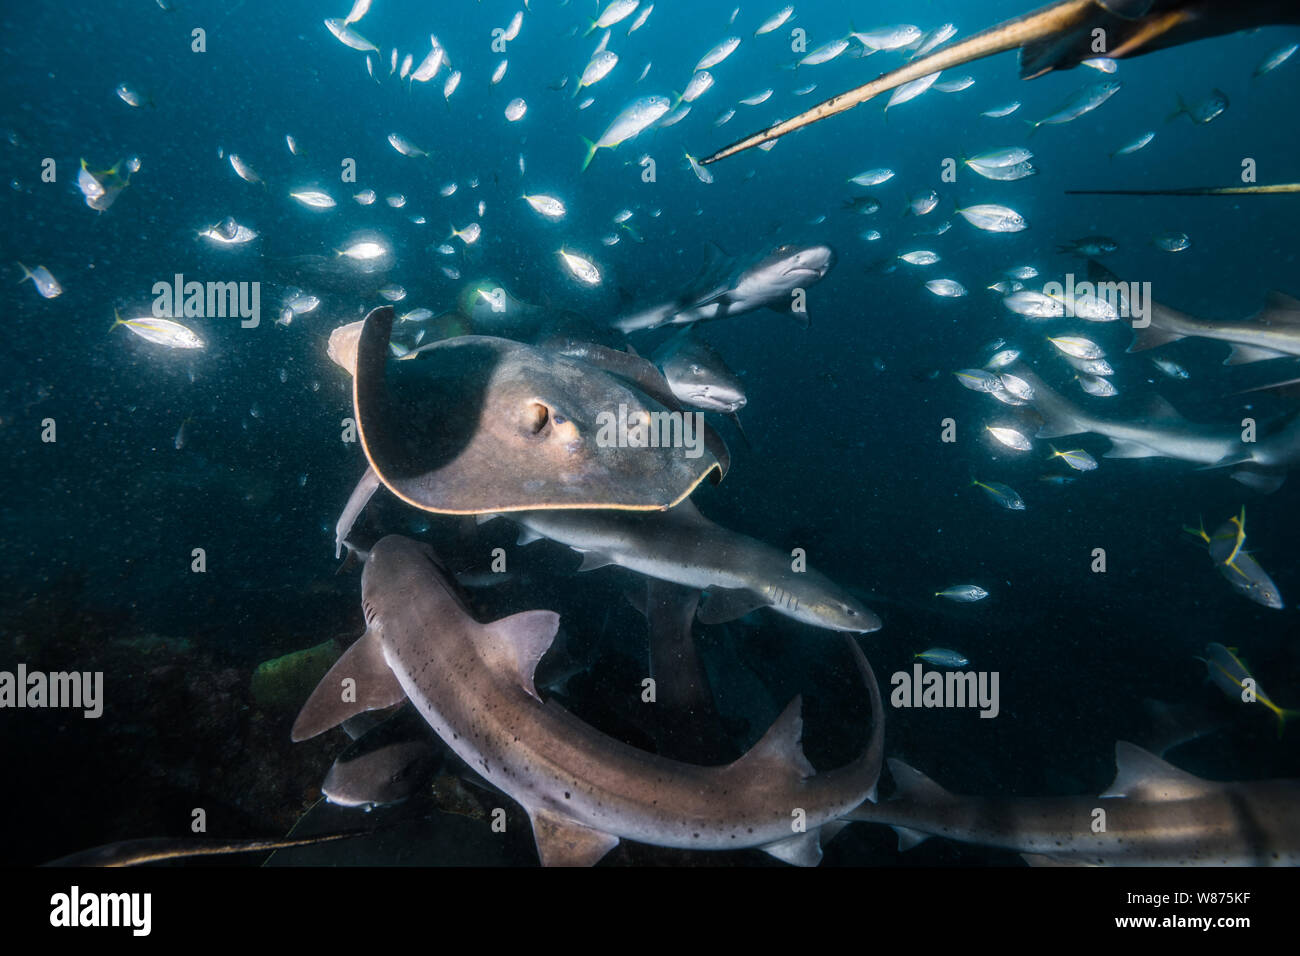 La plus célèbre place où pouvoir plonger avec Shark au Japon. Beaucoup d stingrays​ peut être vu. Ito, Tateyama, Chiba, Japon. Banque D'Images